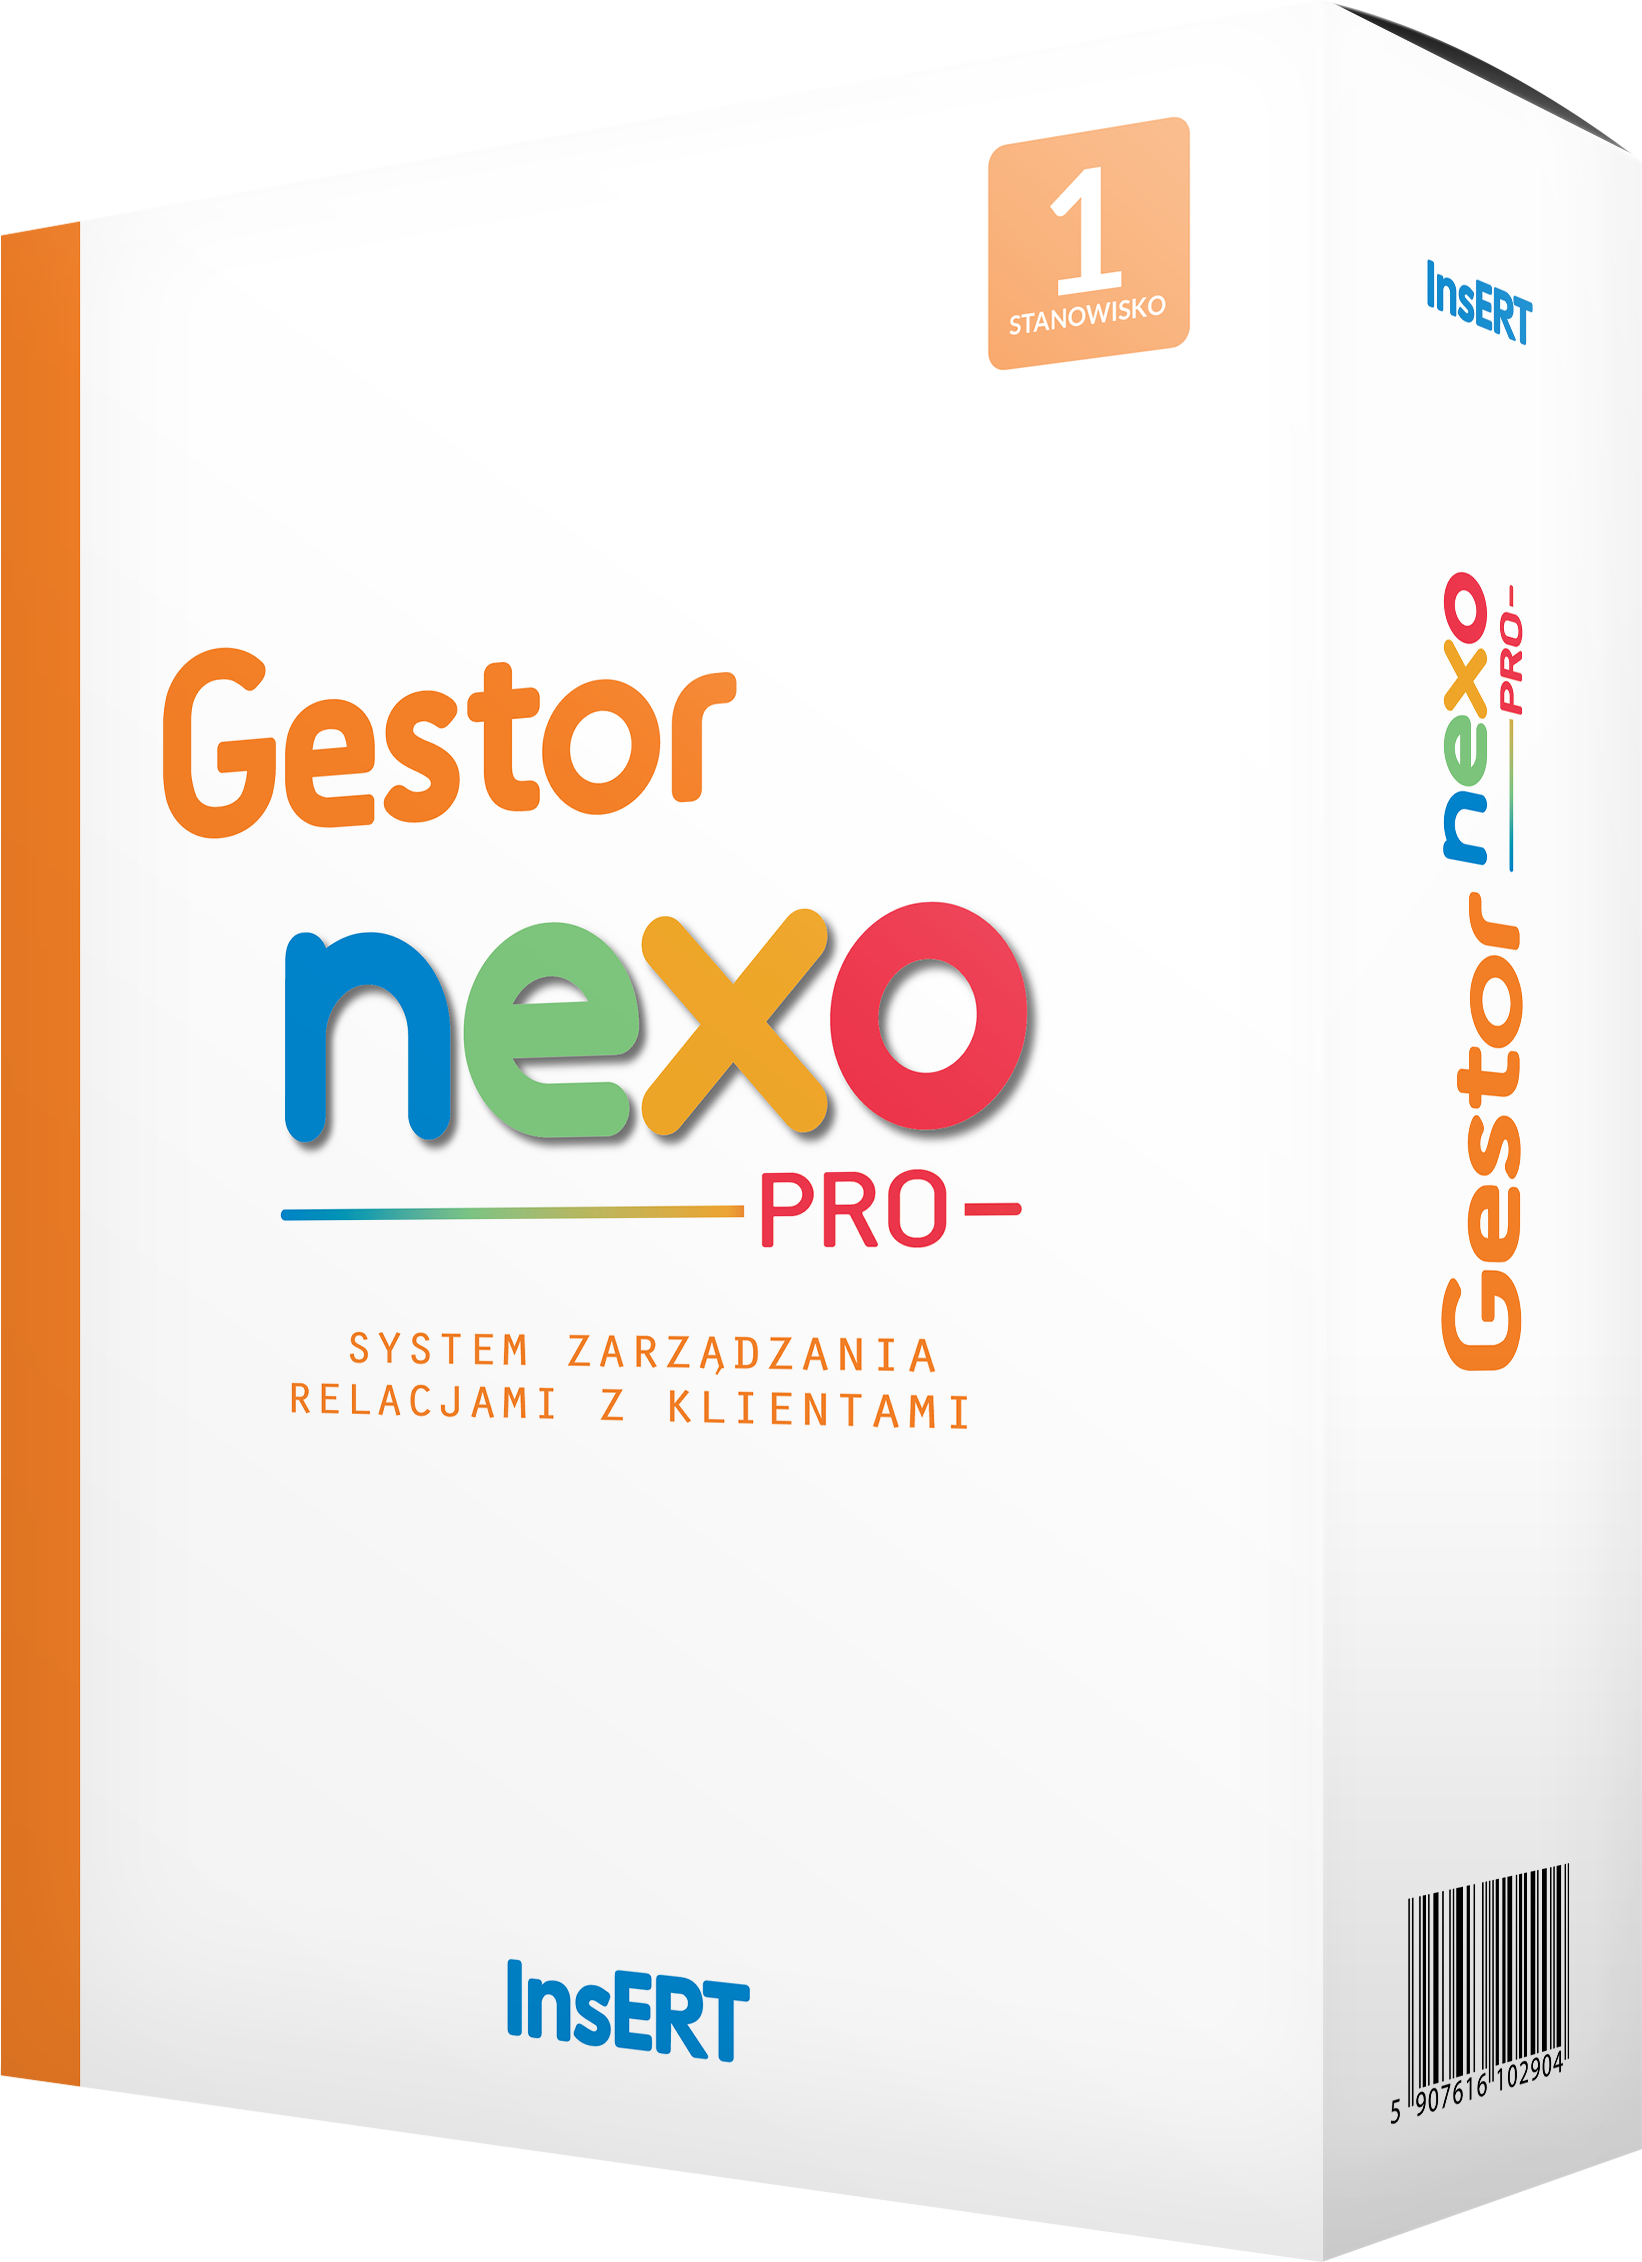 Gestor nexo PRO + 3 stanowiska upgrade z GT Gestor